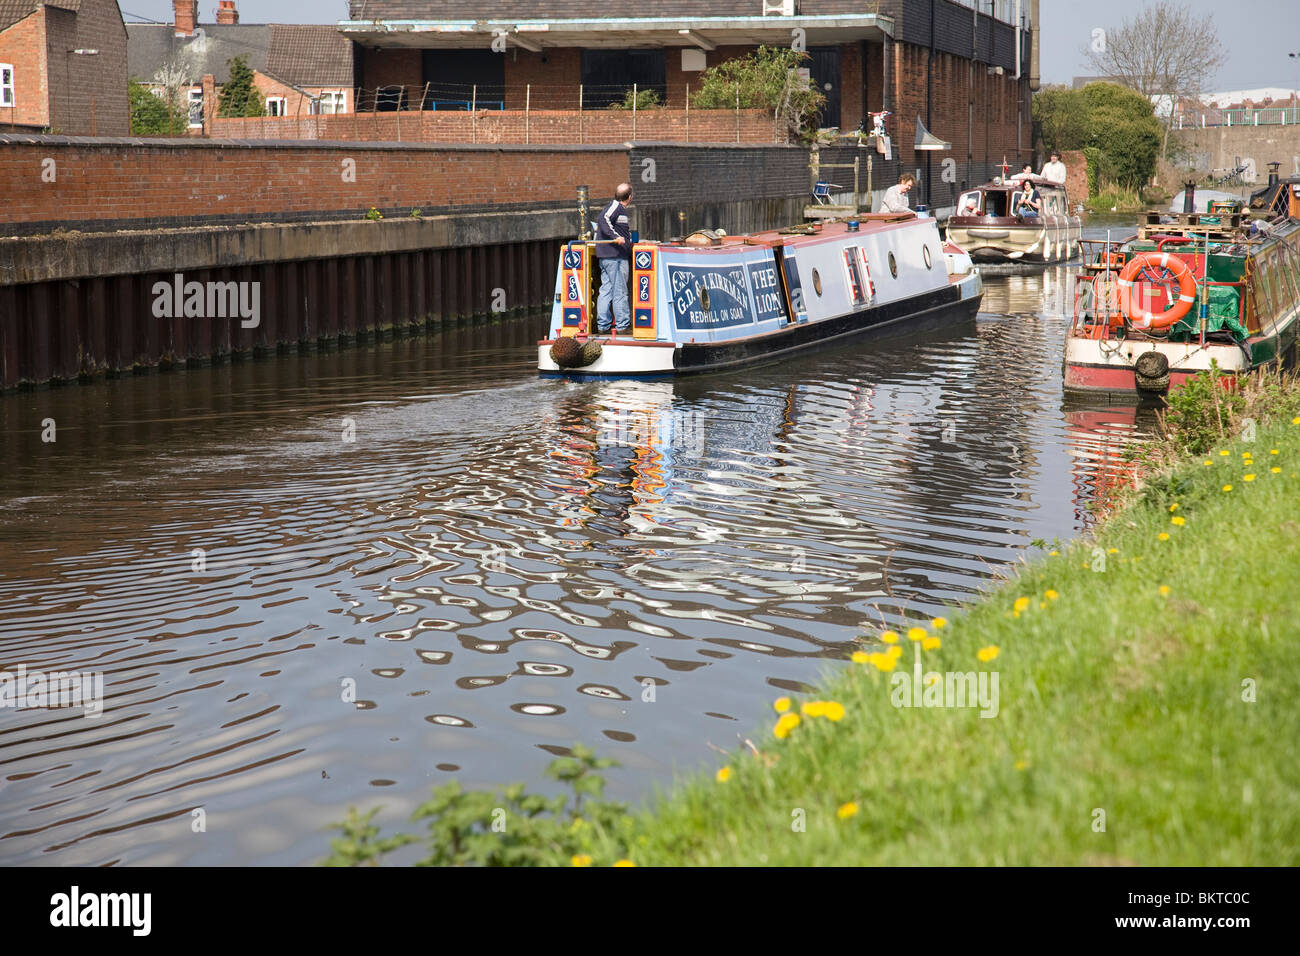 Bateaux sur l'étroit canal de se croiser sur le Canal Grand Union, Loughborough, Leicestershire, Angleterre. Banque D'Images